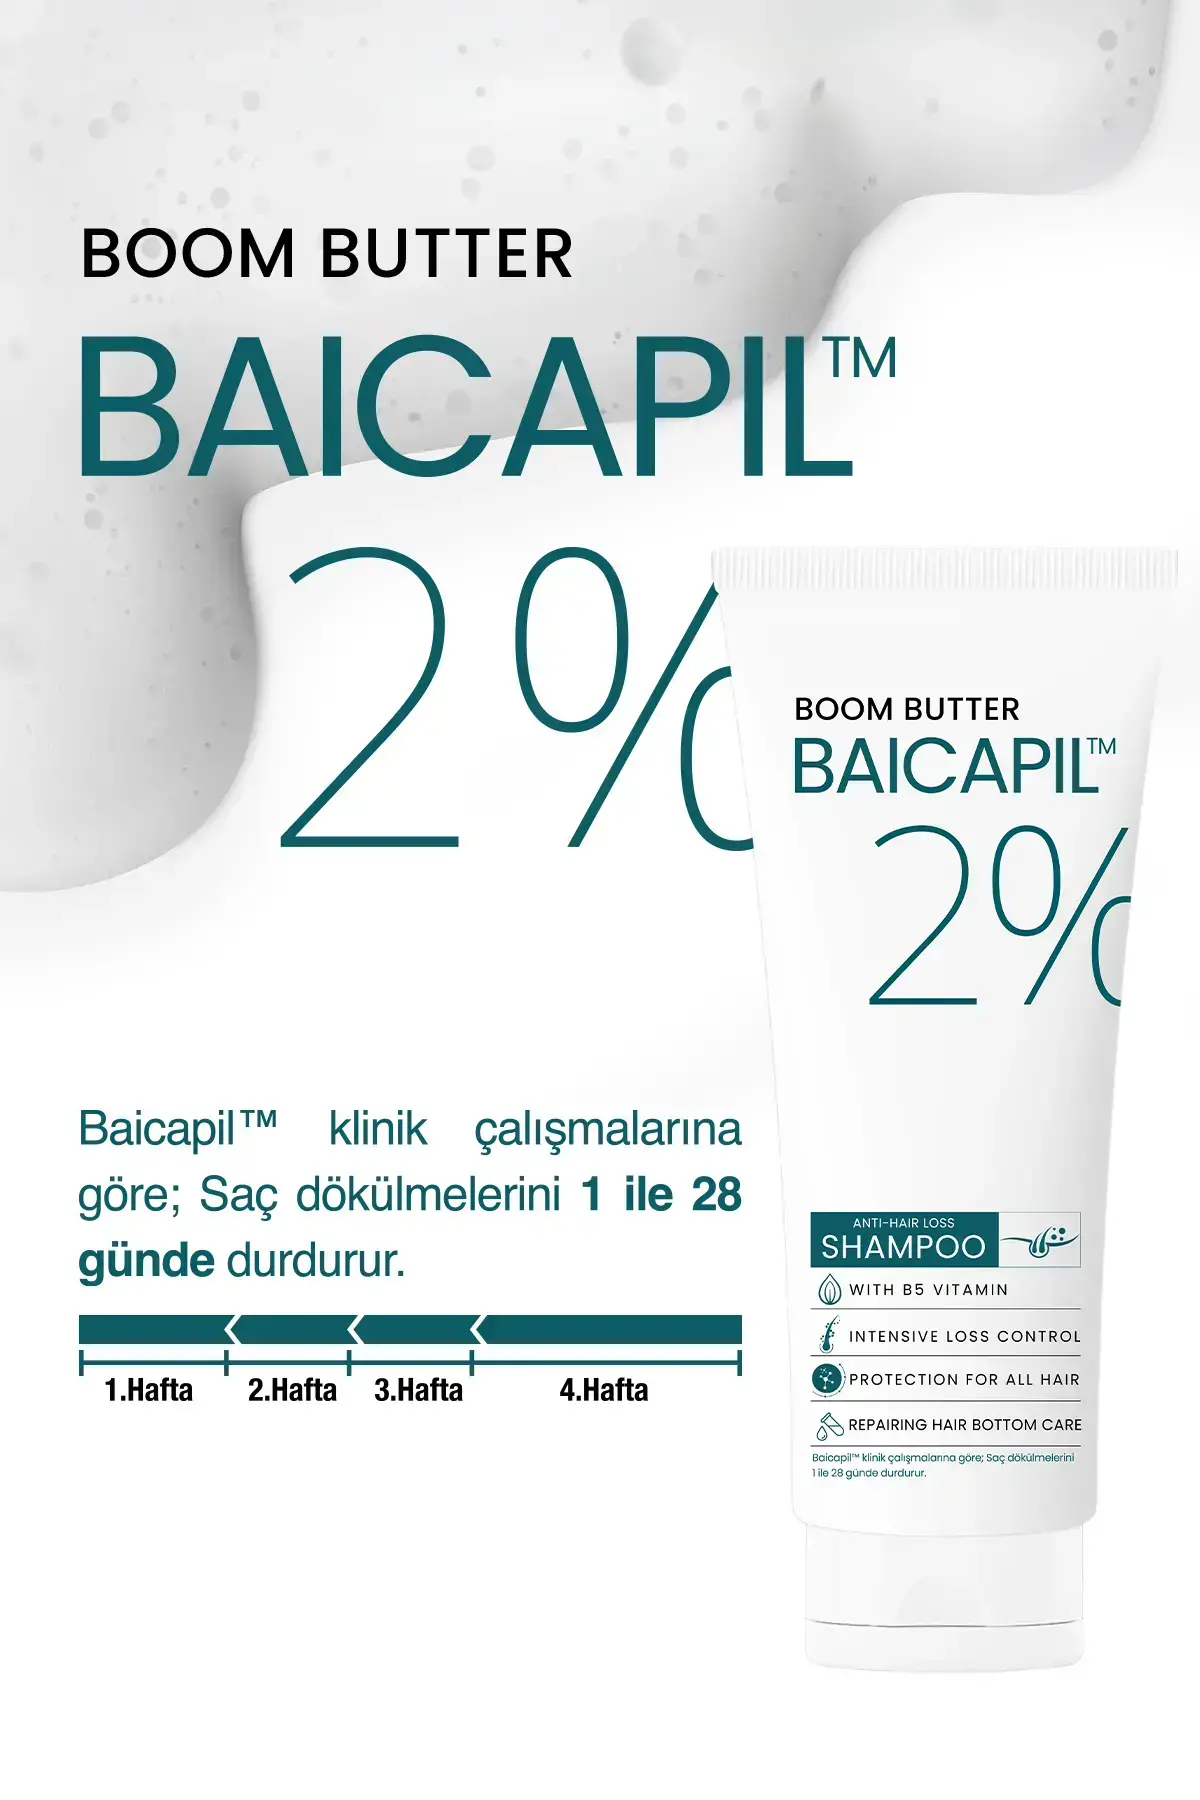 BOOM BUTTER %2 Baicapil Dökülme Önleyici ve Onarım Şampuanı 250ML - 5